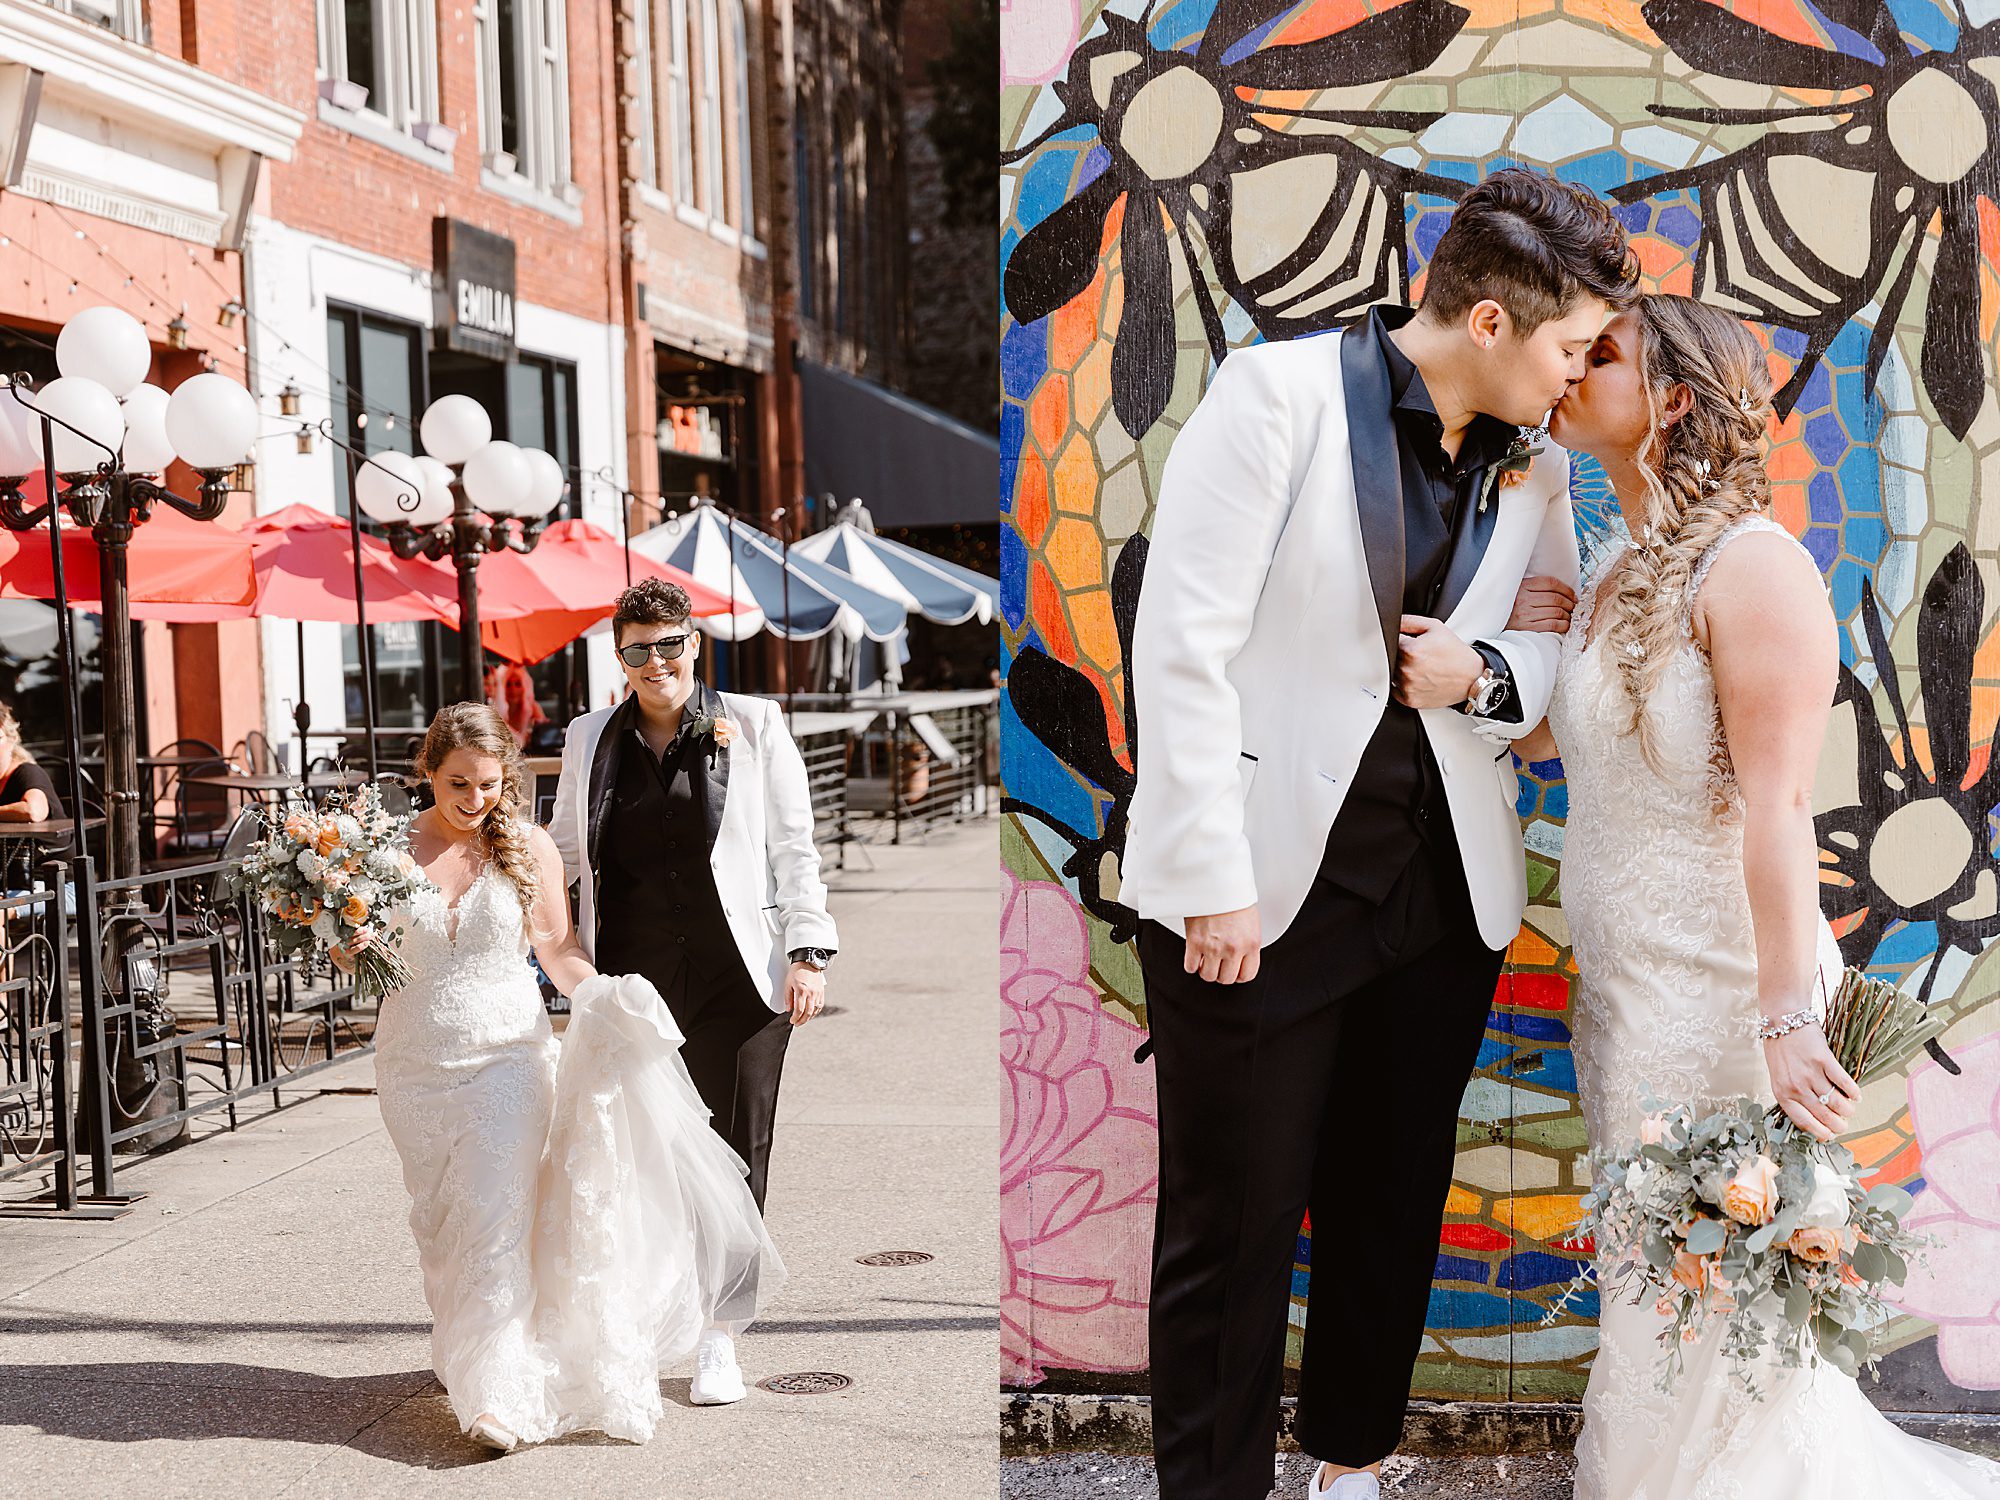 lgbtq+ wedding photos in urban city